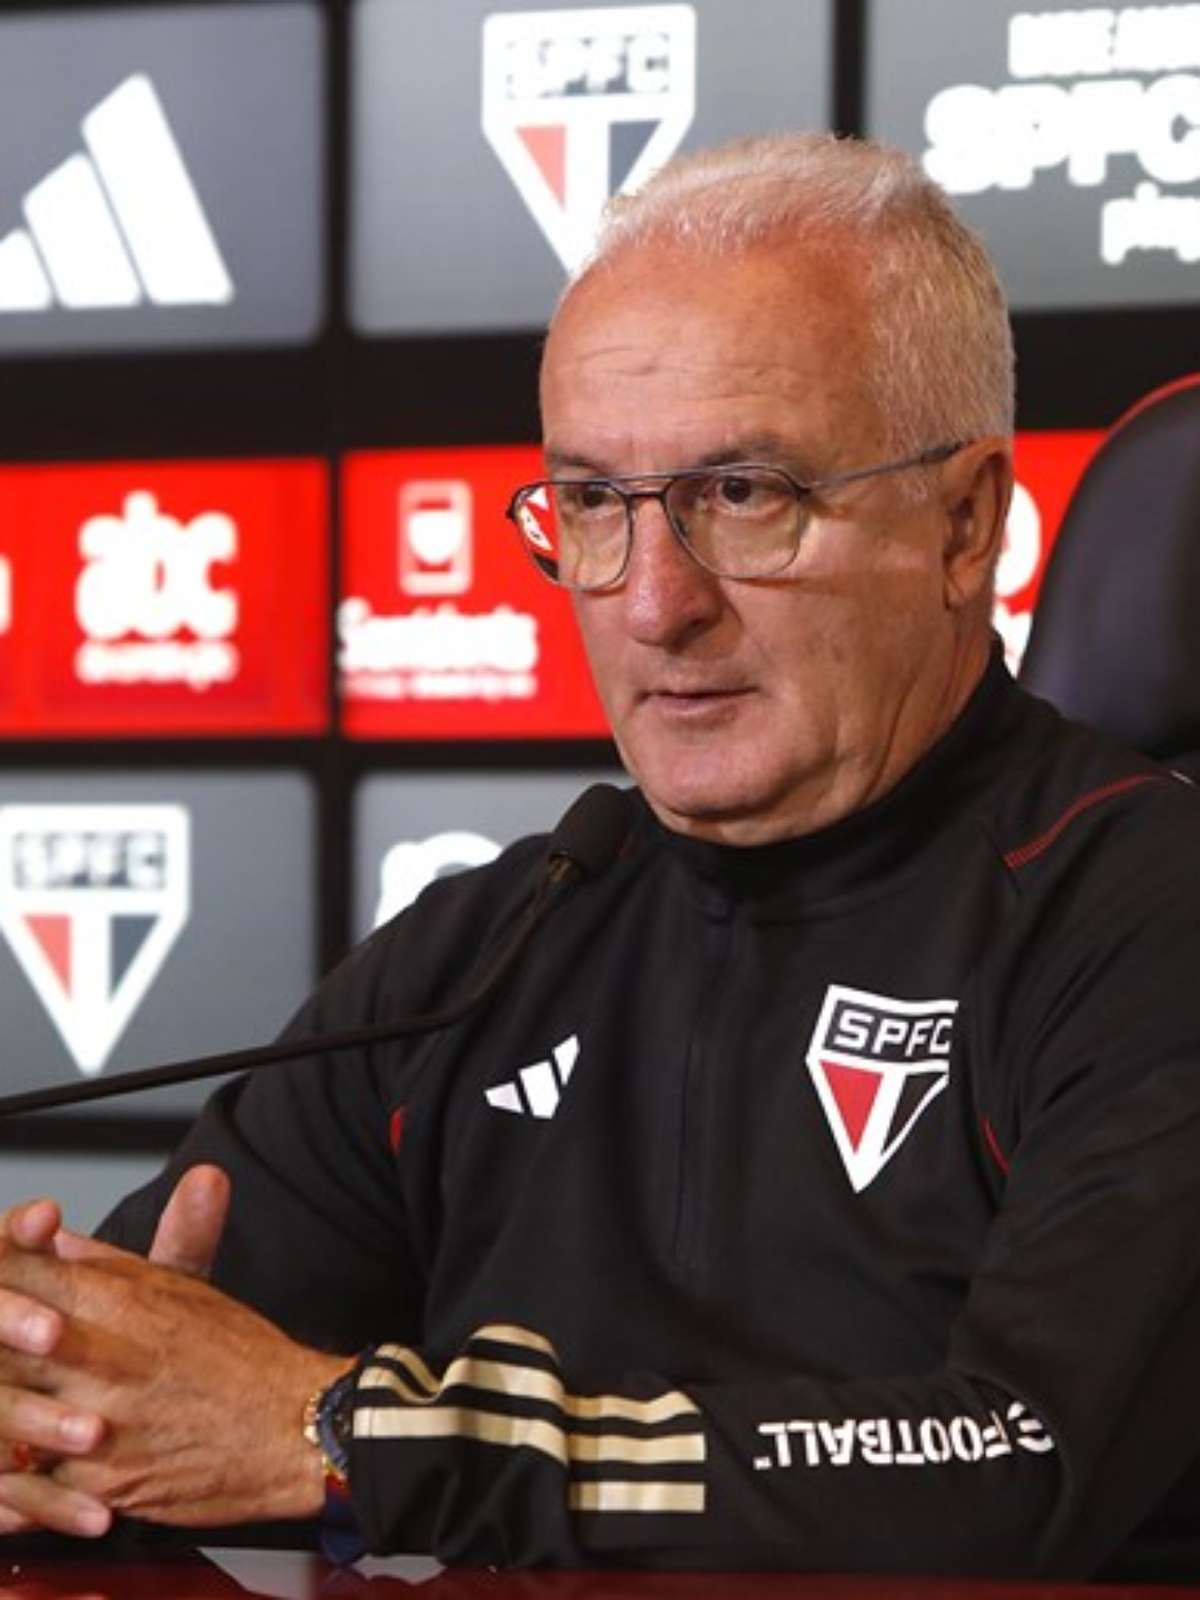 Dorival assume a culpa por derrota do São Paulo e cobra mudança no